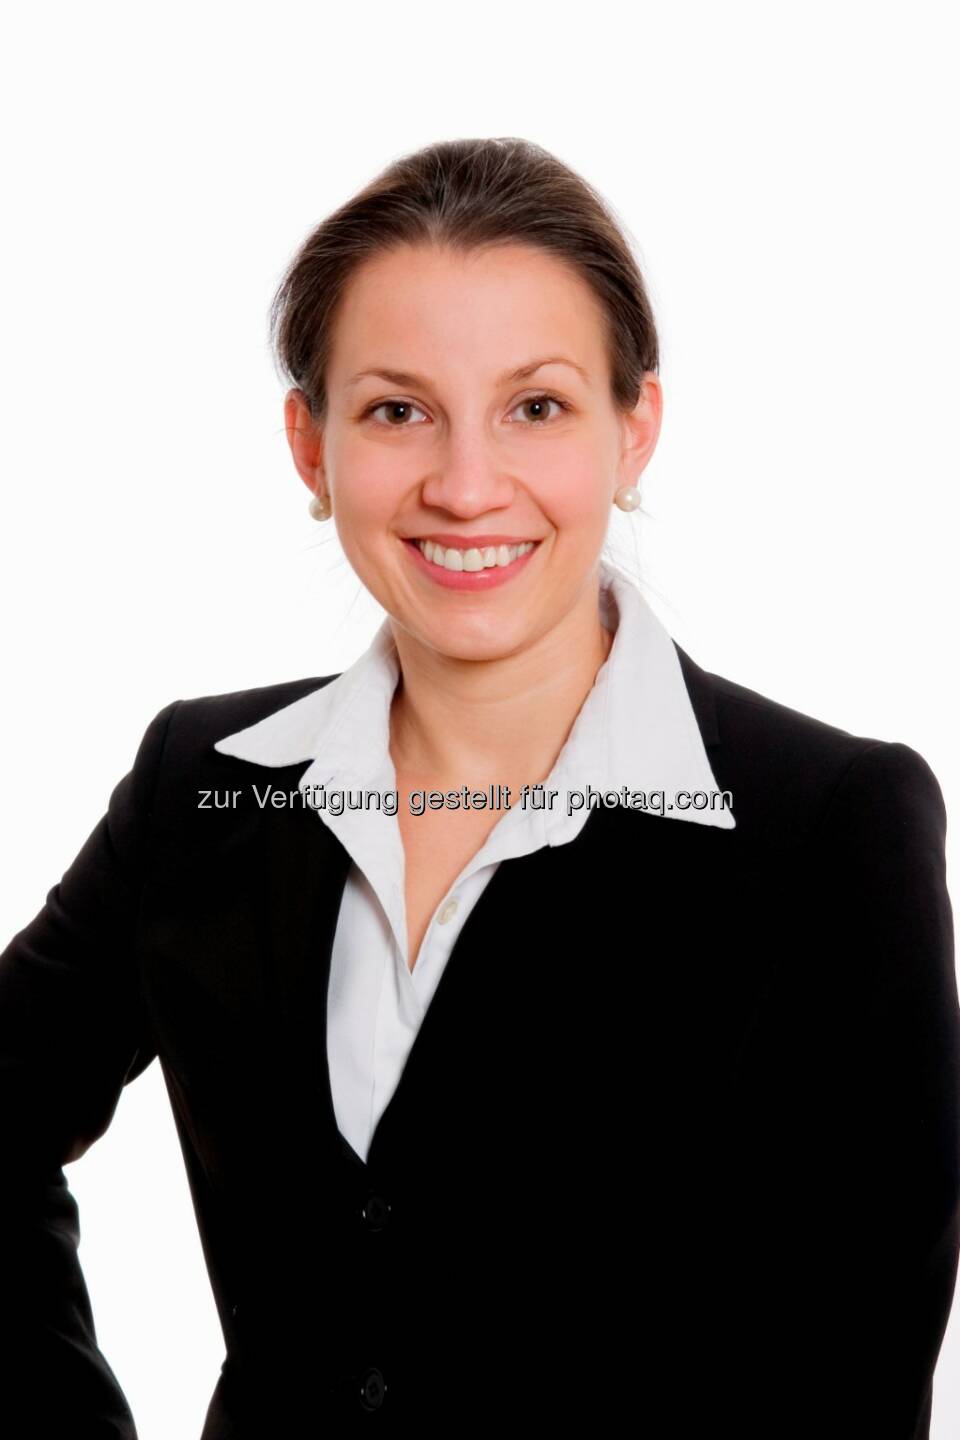 Ursula Rath wird mit 1. Februar 2014 Equity Partner der zentraleuropäischen Rechtsanwaltskanzlei Schönherr. Rath ist spezialisiert auf den Bereich Banking, Finance & Capital Markets und hat in den letzten Jahren einige der größten Kapitalmarkttransaktionen in Österreich federführend betreut. (C) Schönherr